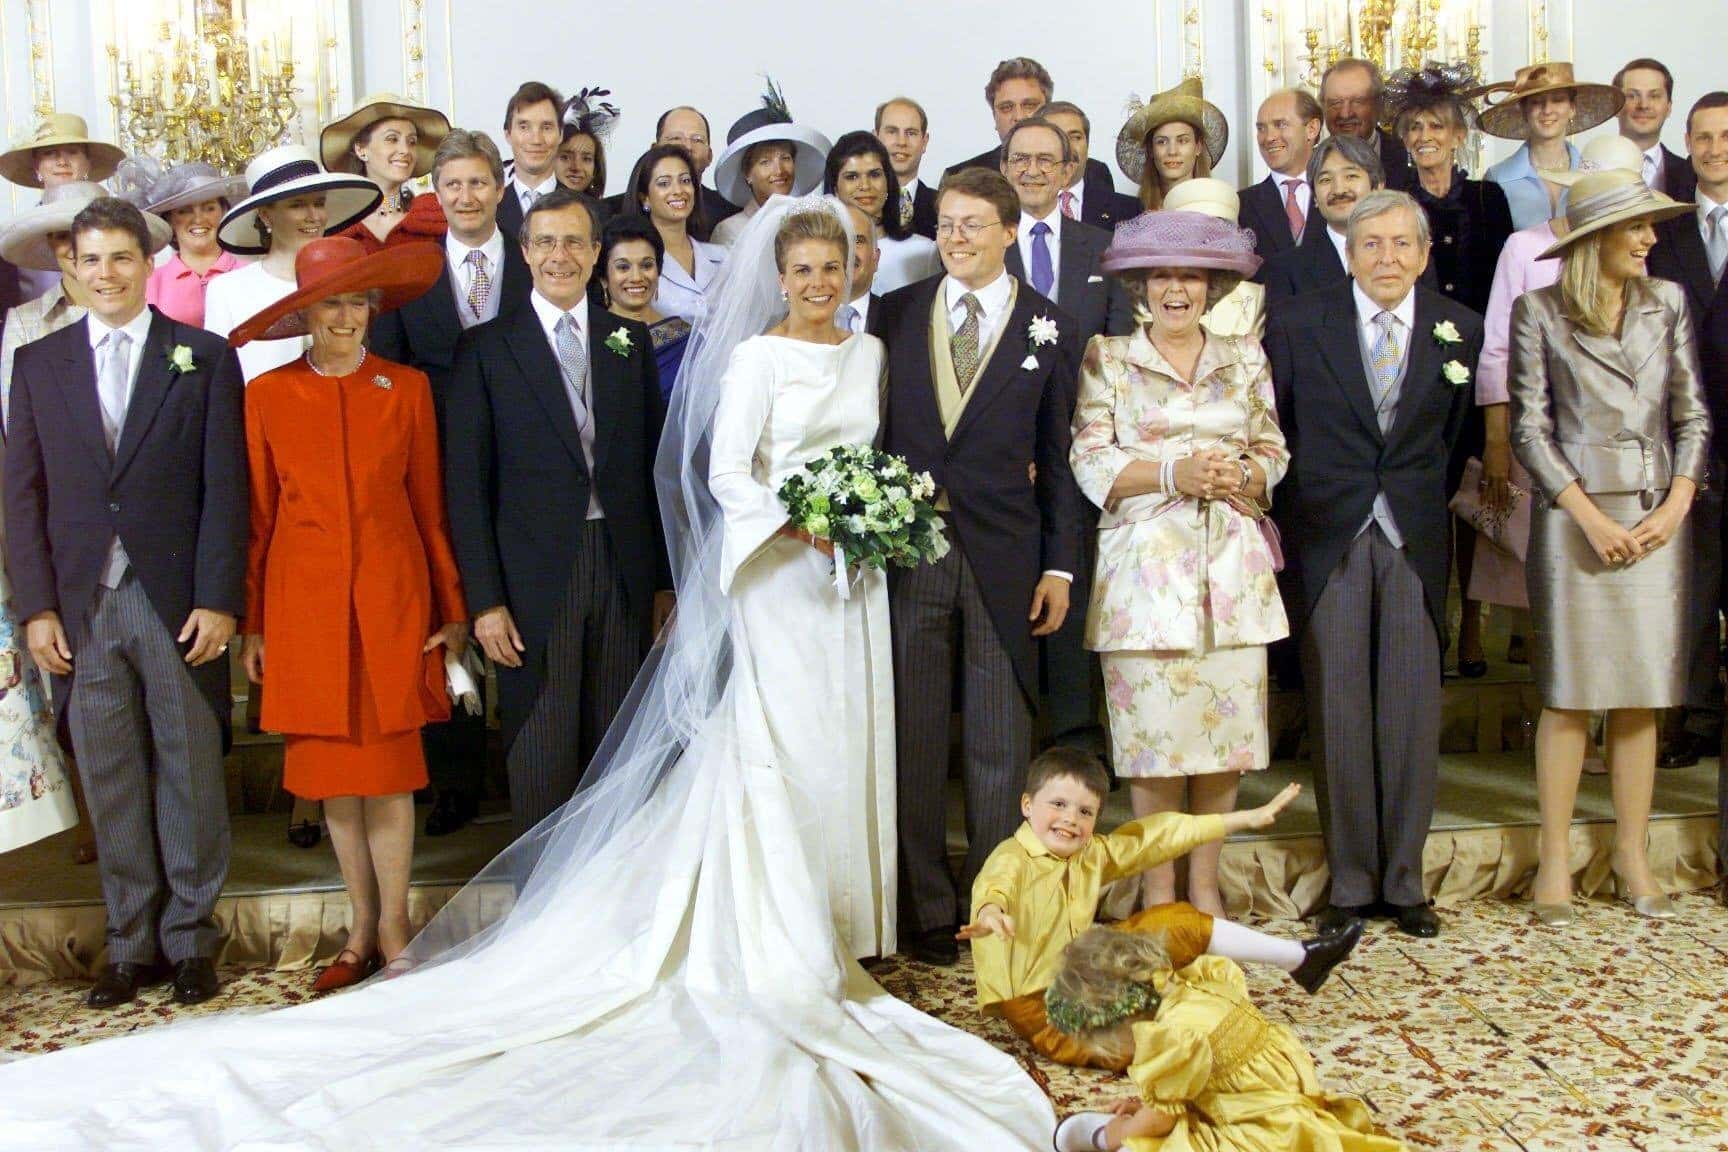 Hochzeit von Prinzessin Laurentien und Prinz Constantijn